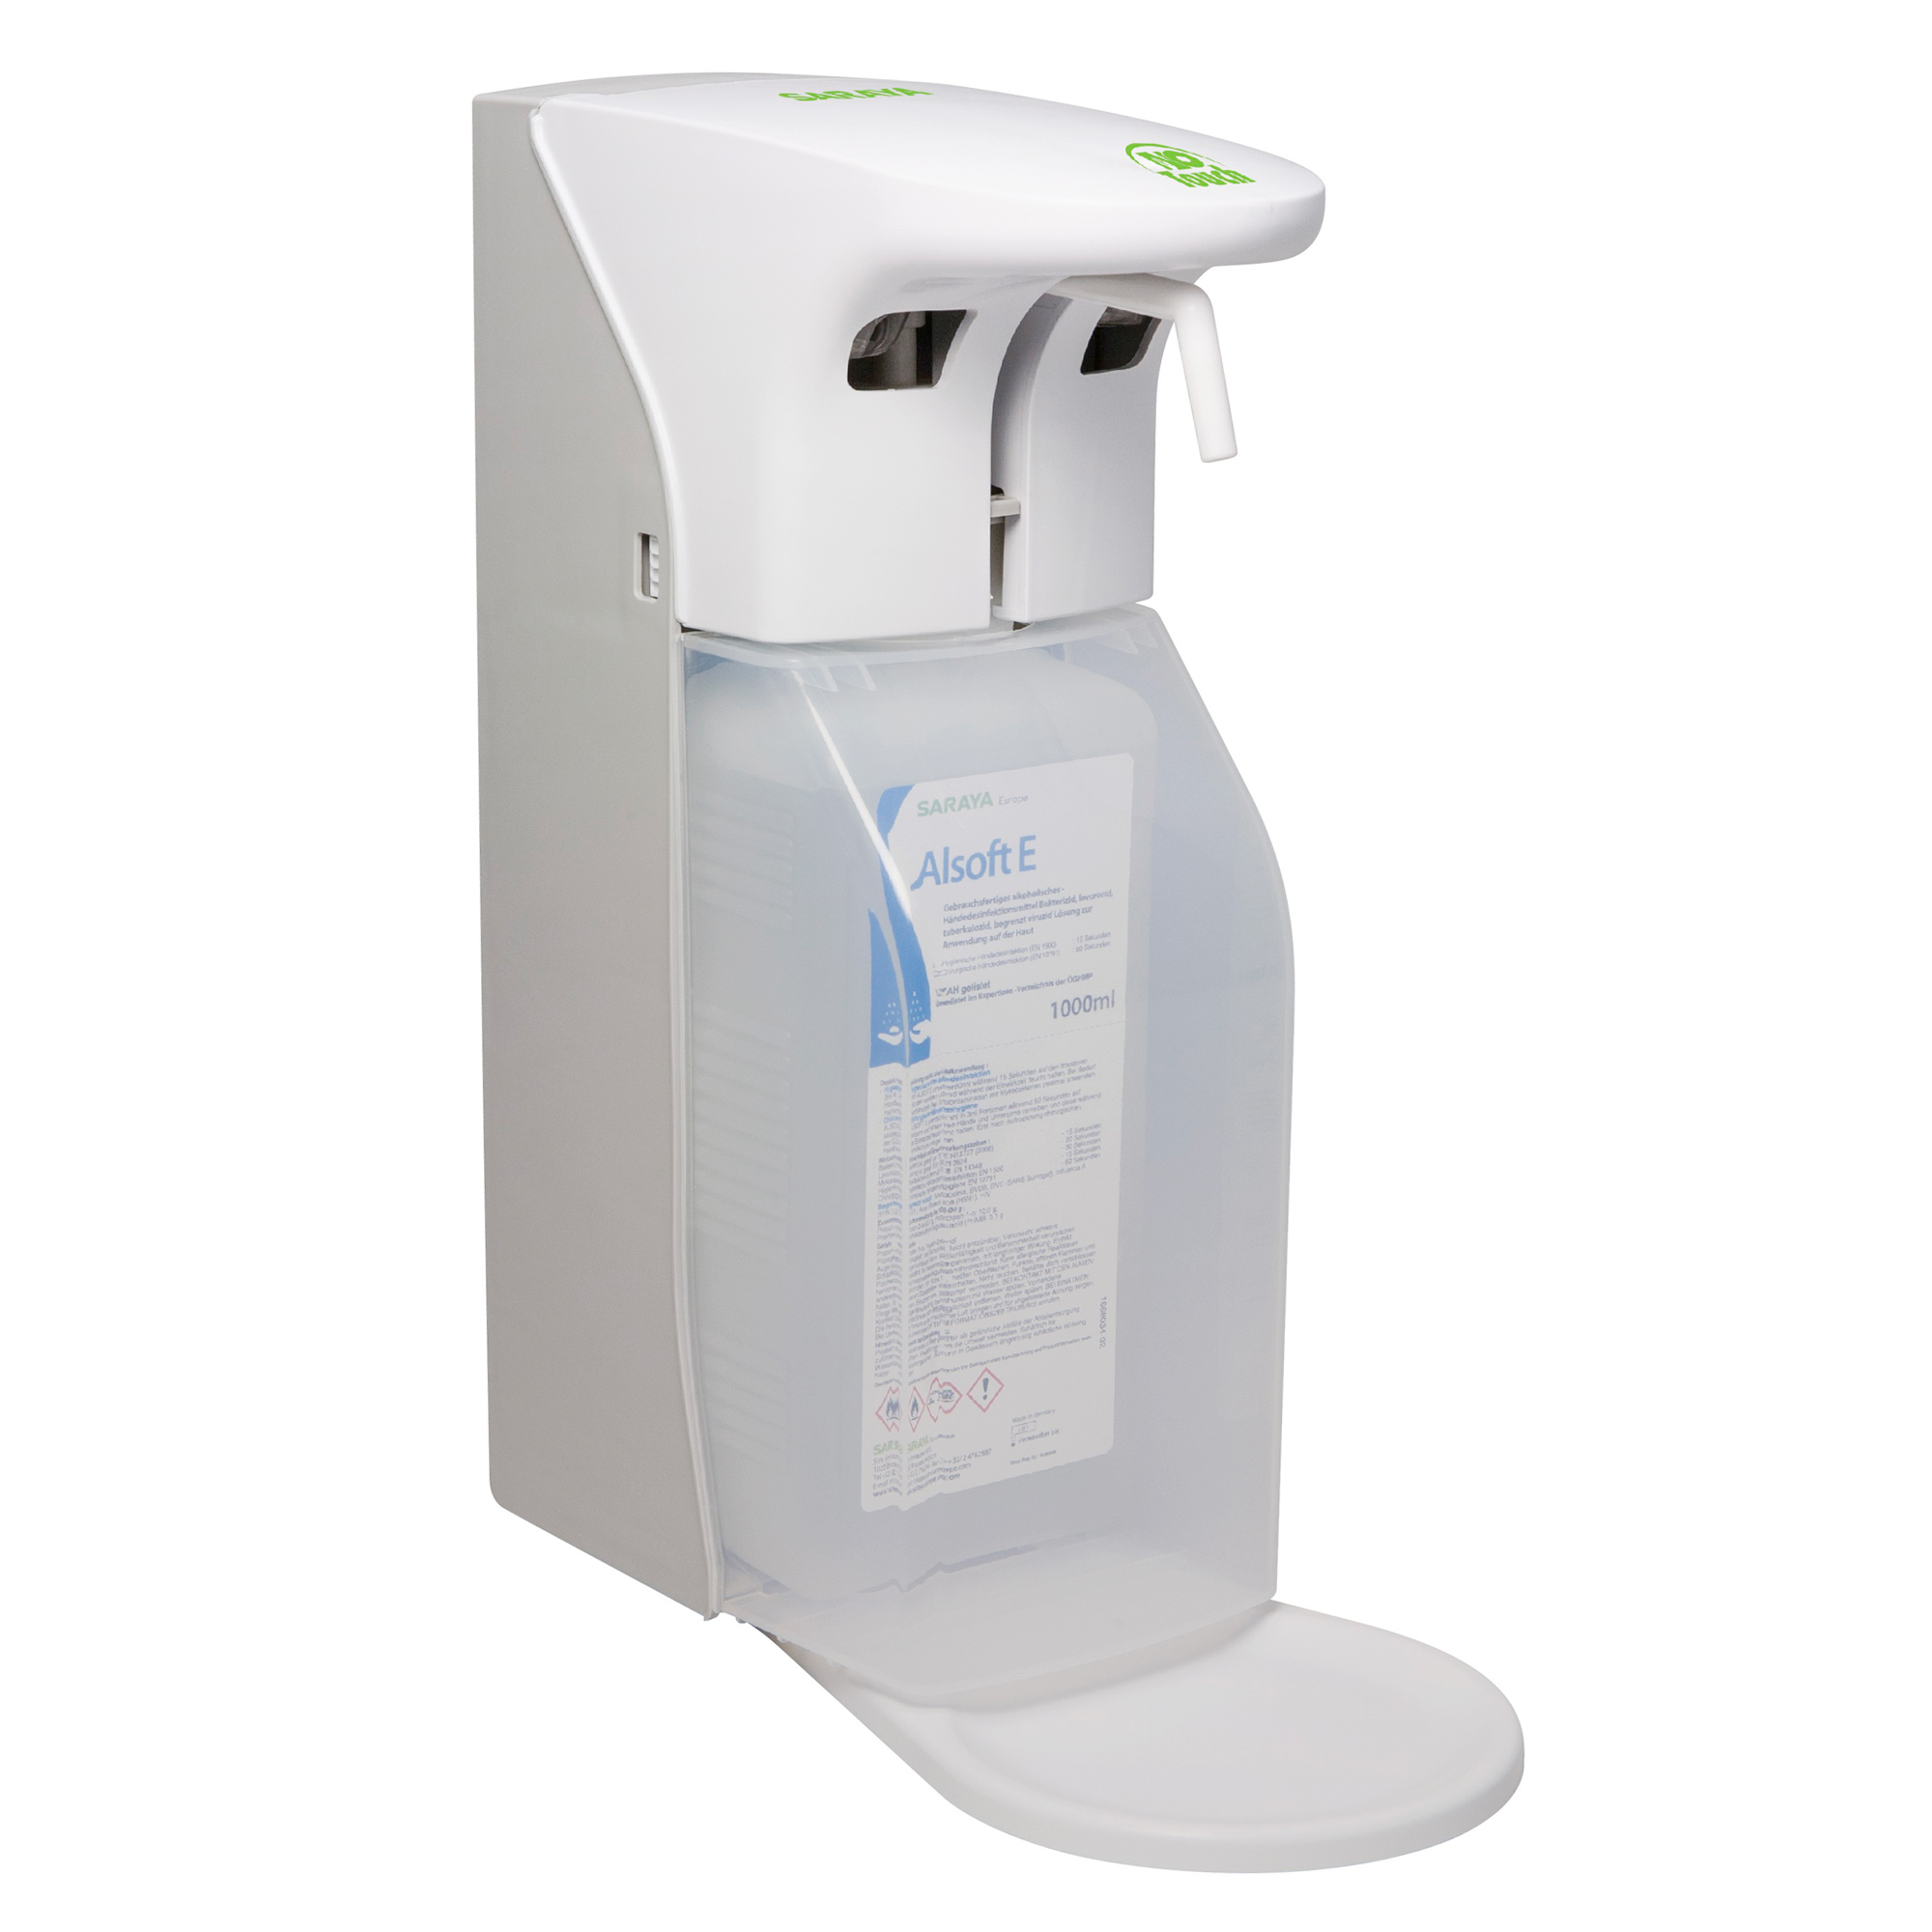 Saraya Sensorspender ADS-500/1000 für Seife oder Desinfektionsmittel